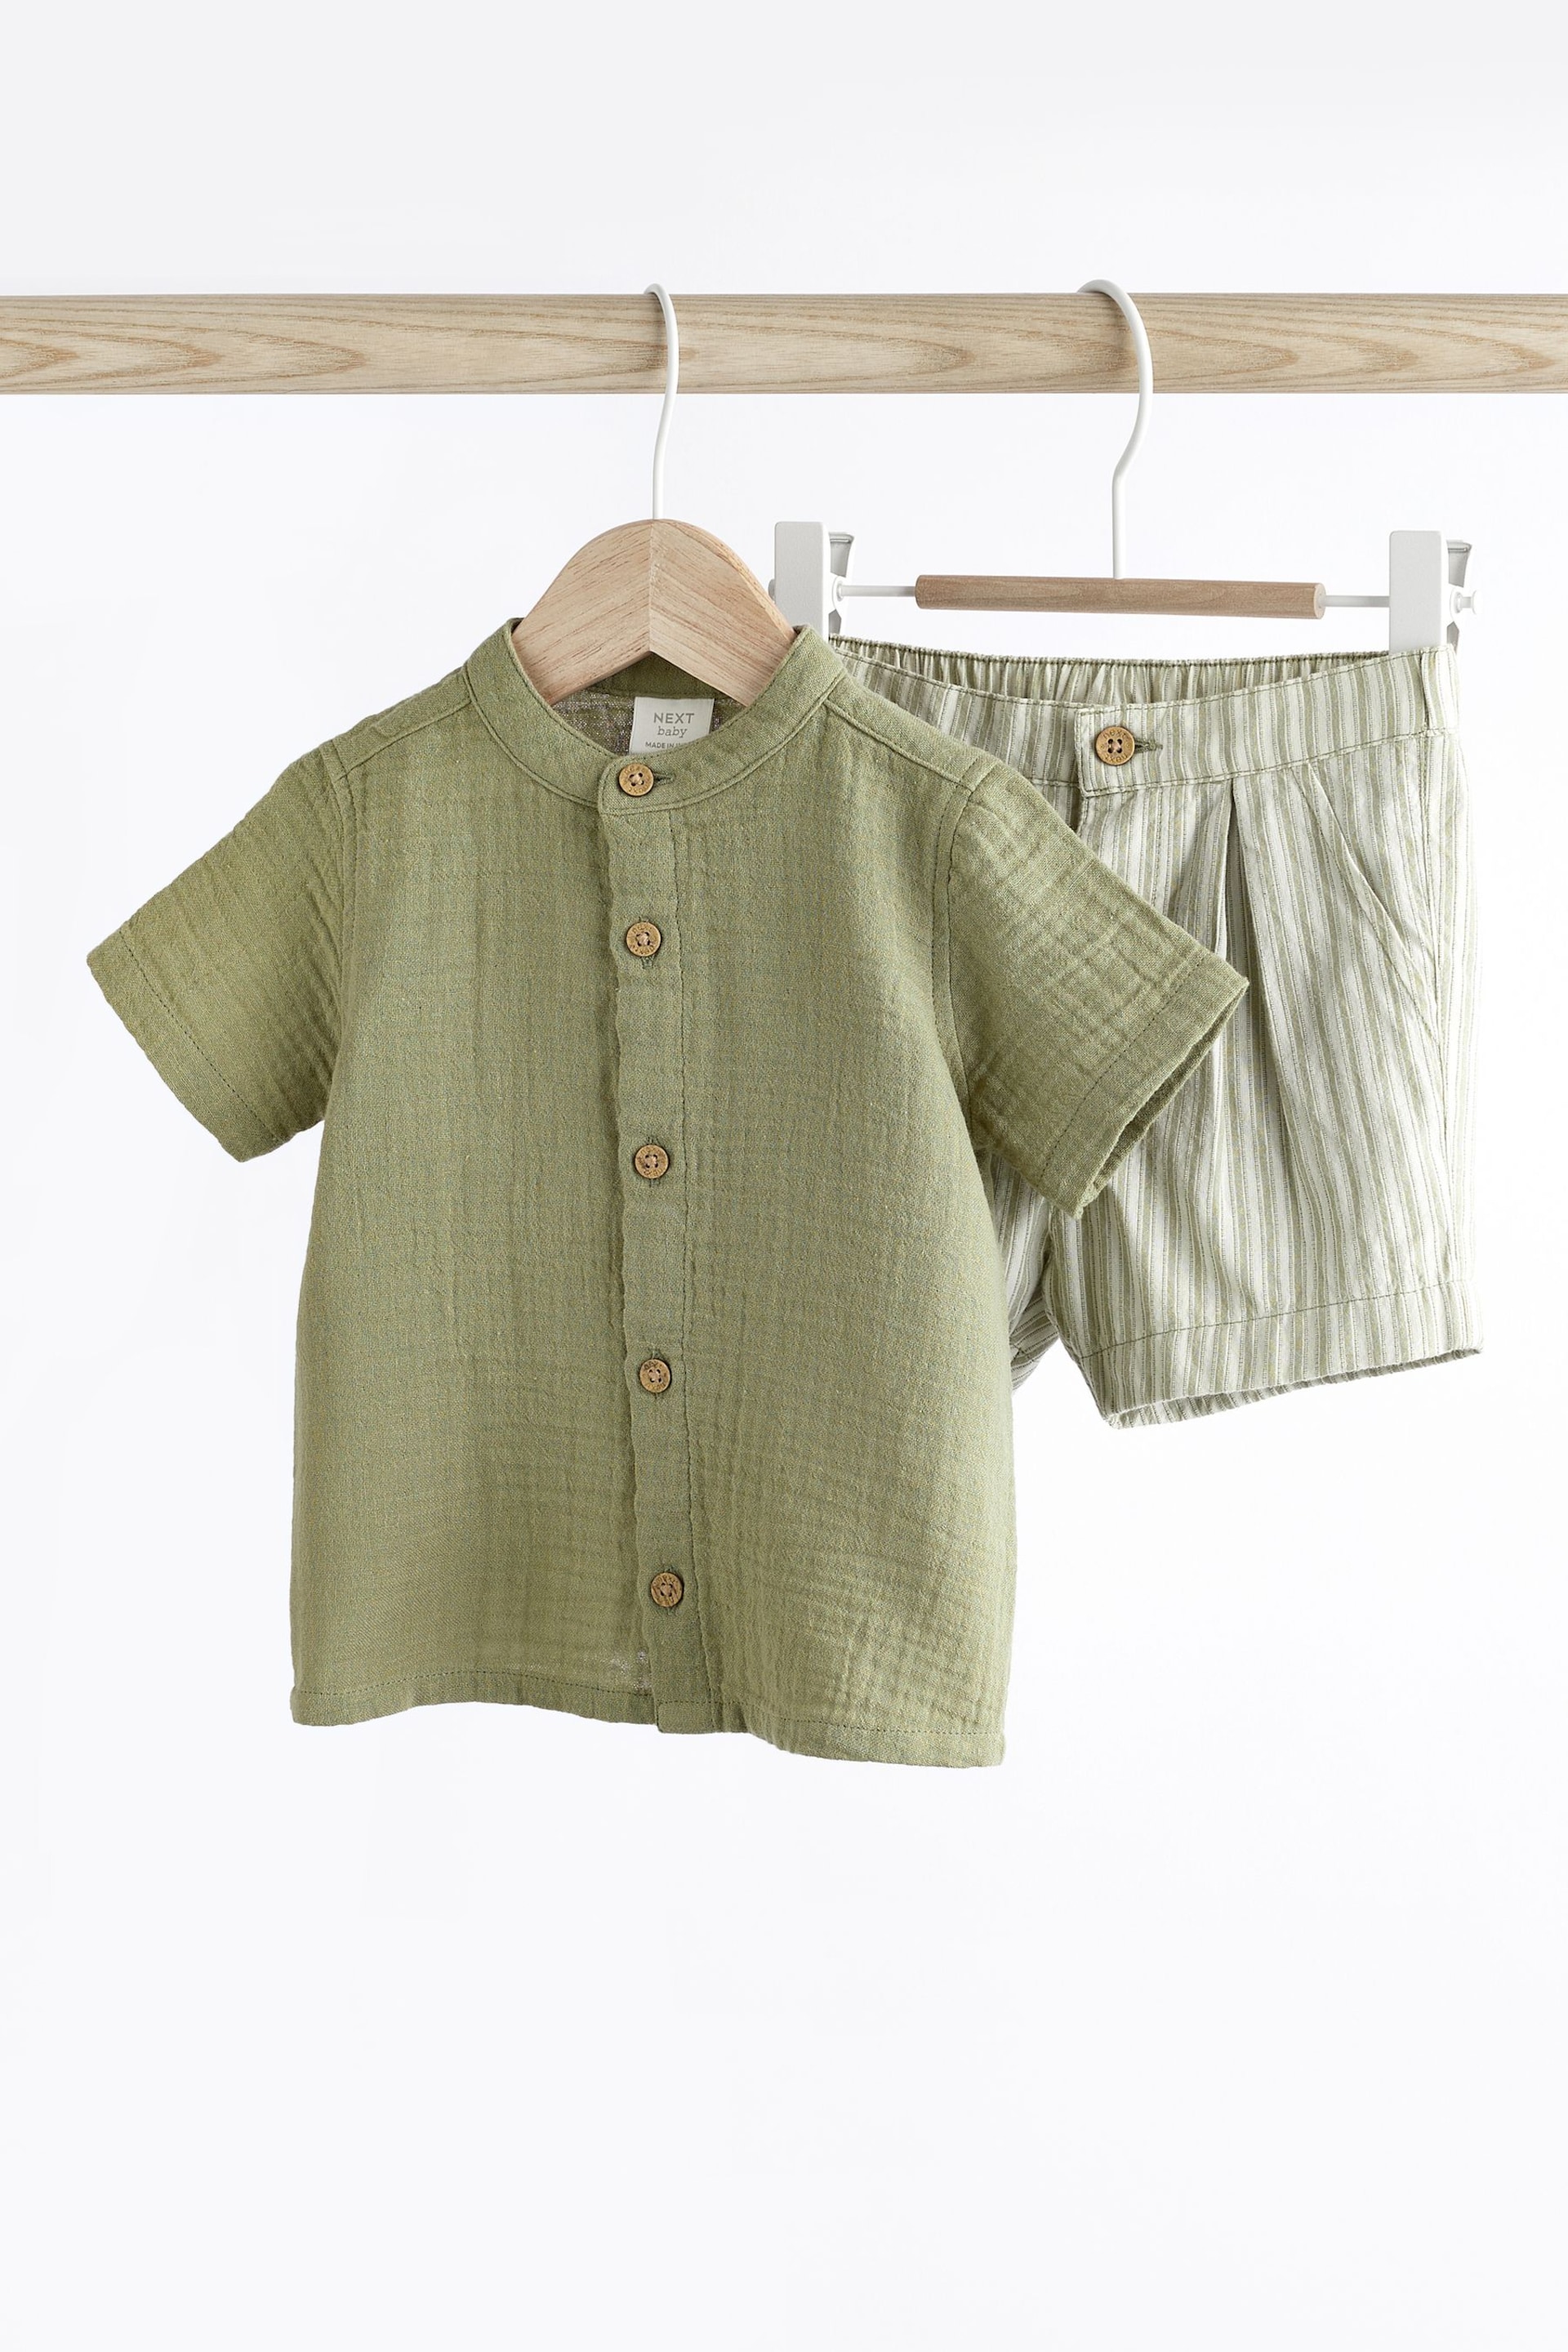 Sage Green Baby Shirt and Shorts Set (0mths-2yrs) - Image 4 of 10